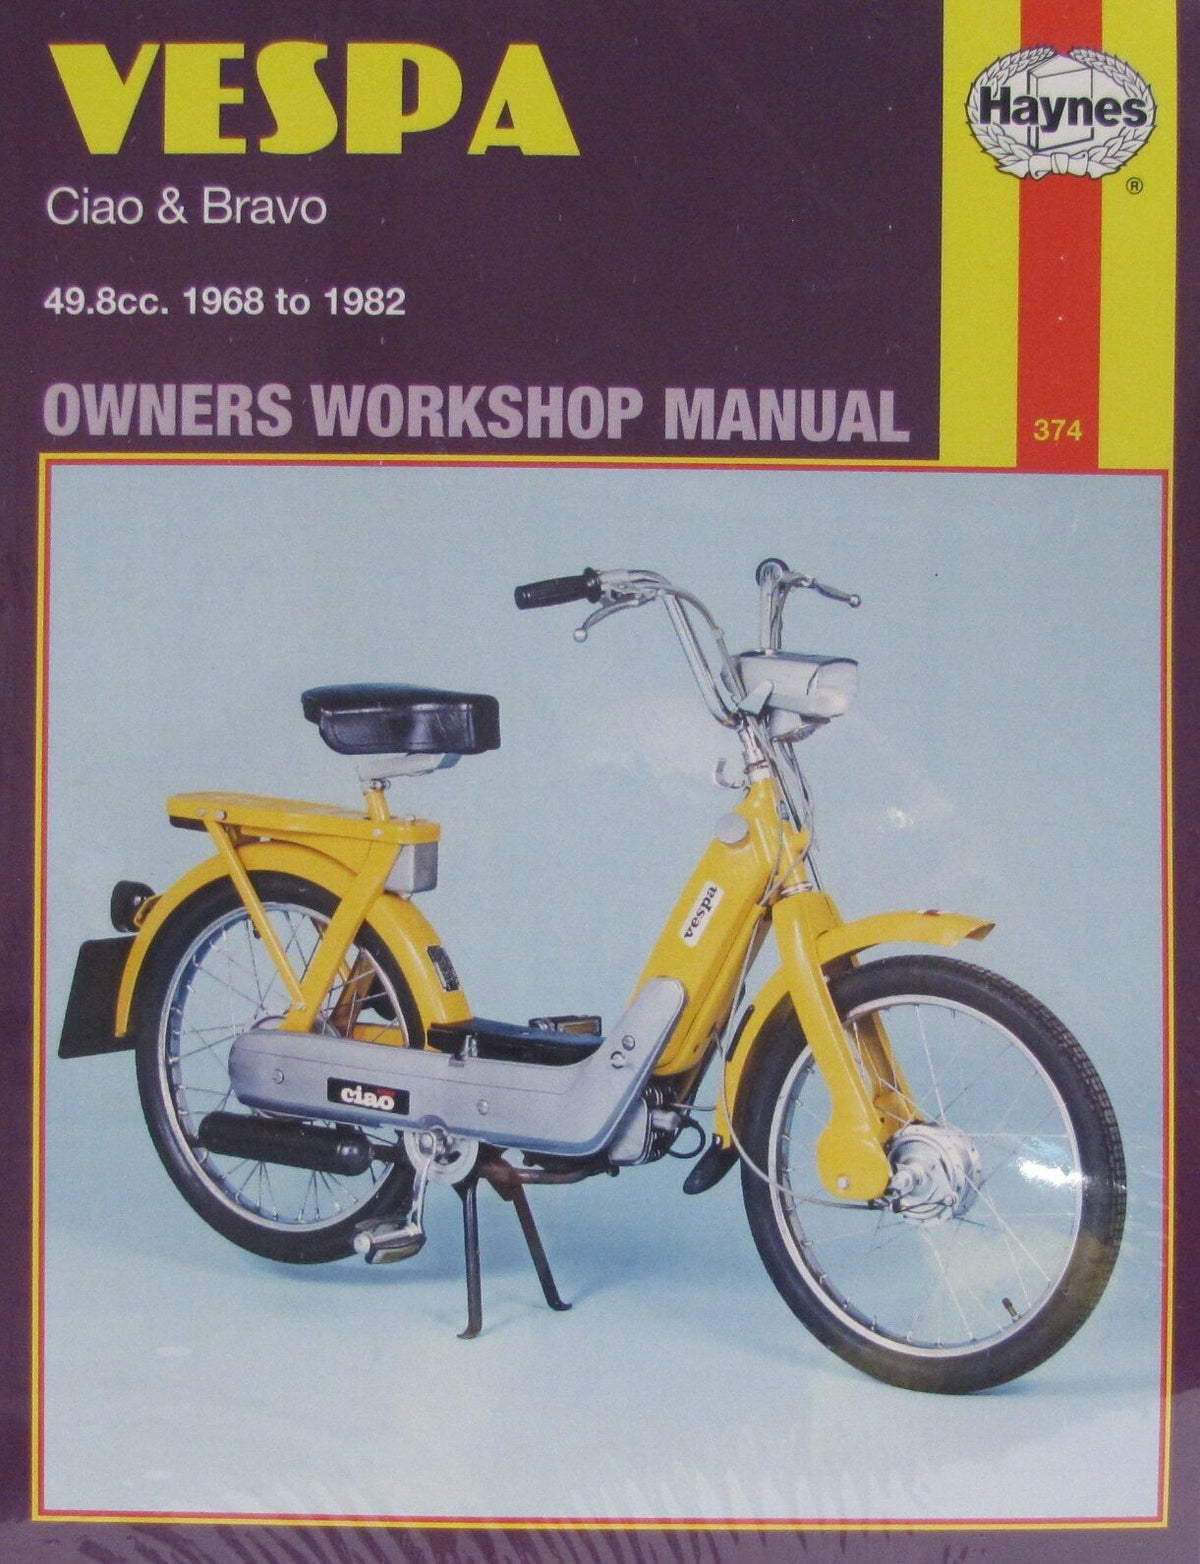 Manual - Haynes - Vespa Ciao/Bravo 1968-1982